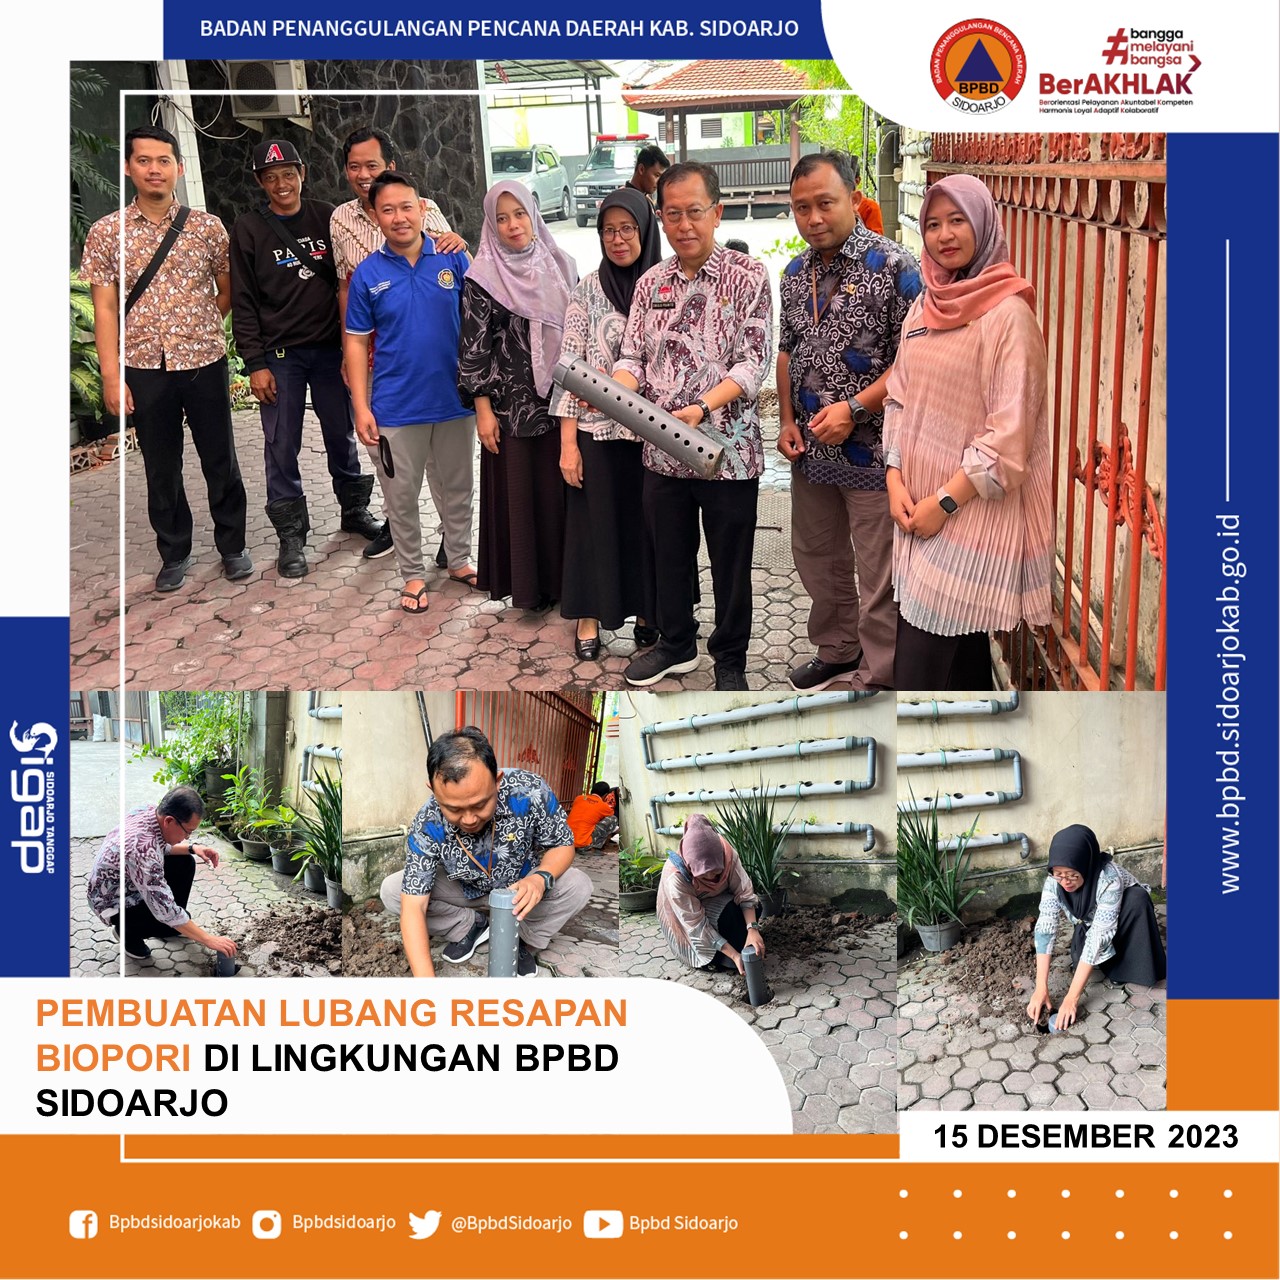 Pelaksanaan Pembuatan Lubang Resapan Biopori di Lingkungan BPBD Kabupaten Sidoarjo Dalam Rangka Memperingati HUT KORPRI Ke-52.